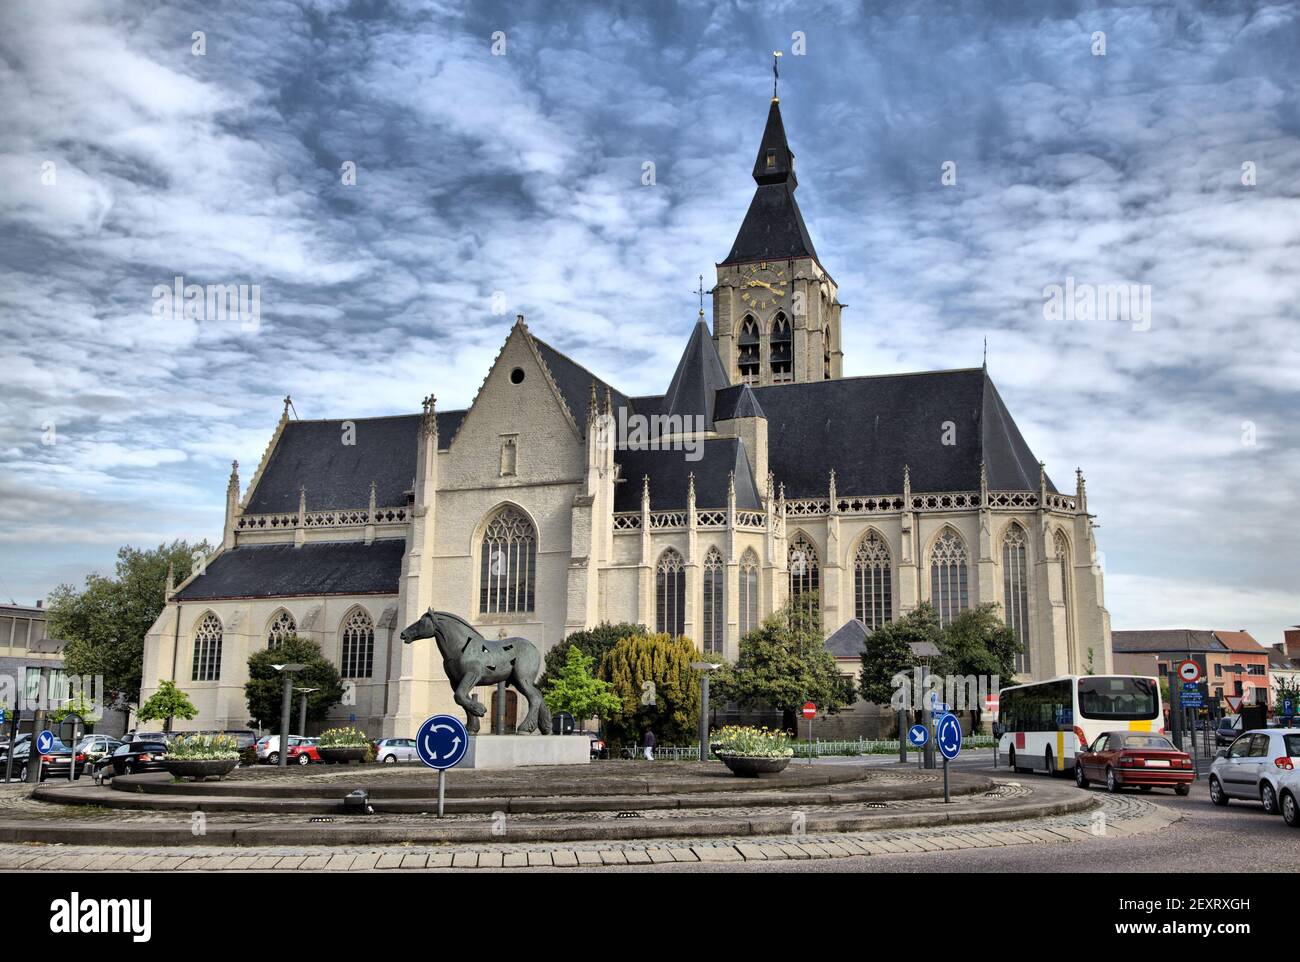 Eglise et statue de cheval dans le centre de Vilvoorde - ville près de Bruxelles, Belgique Banque D'Images